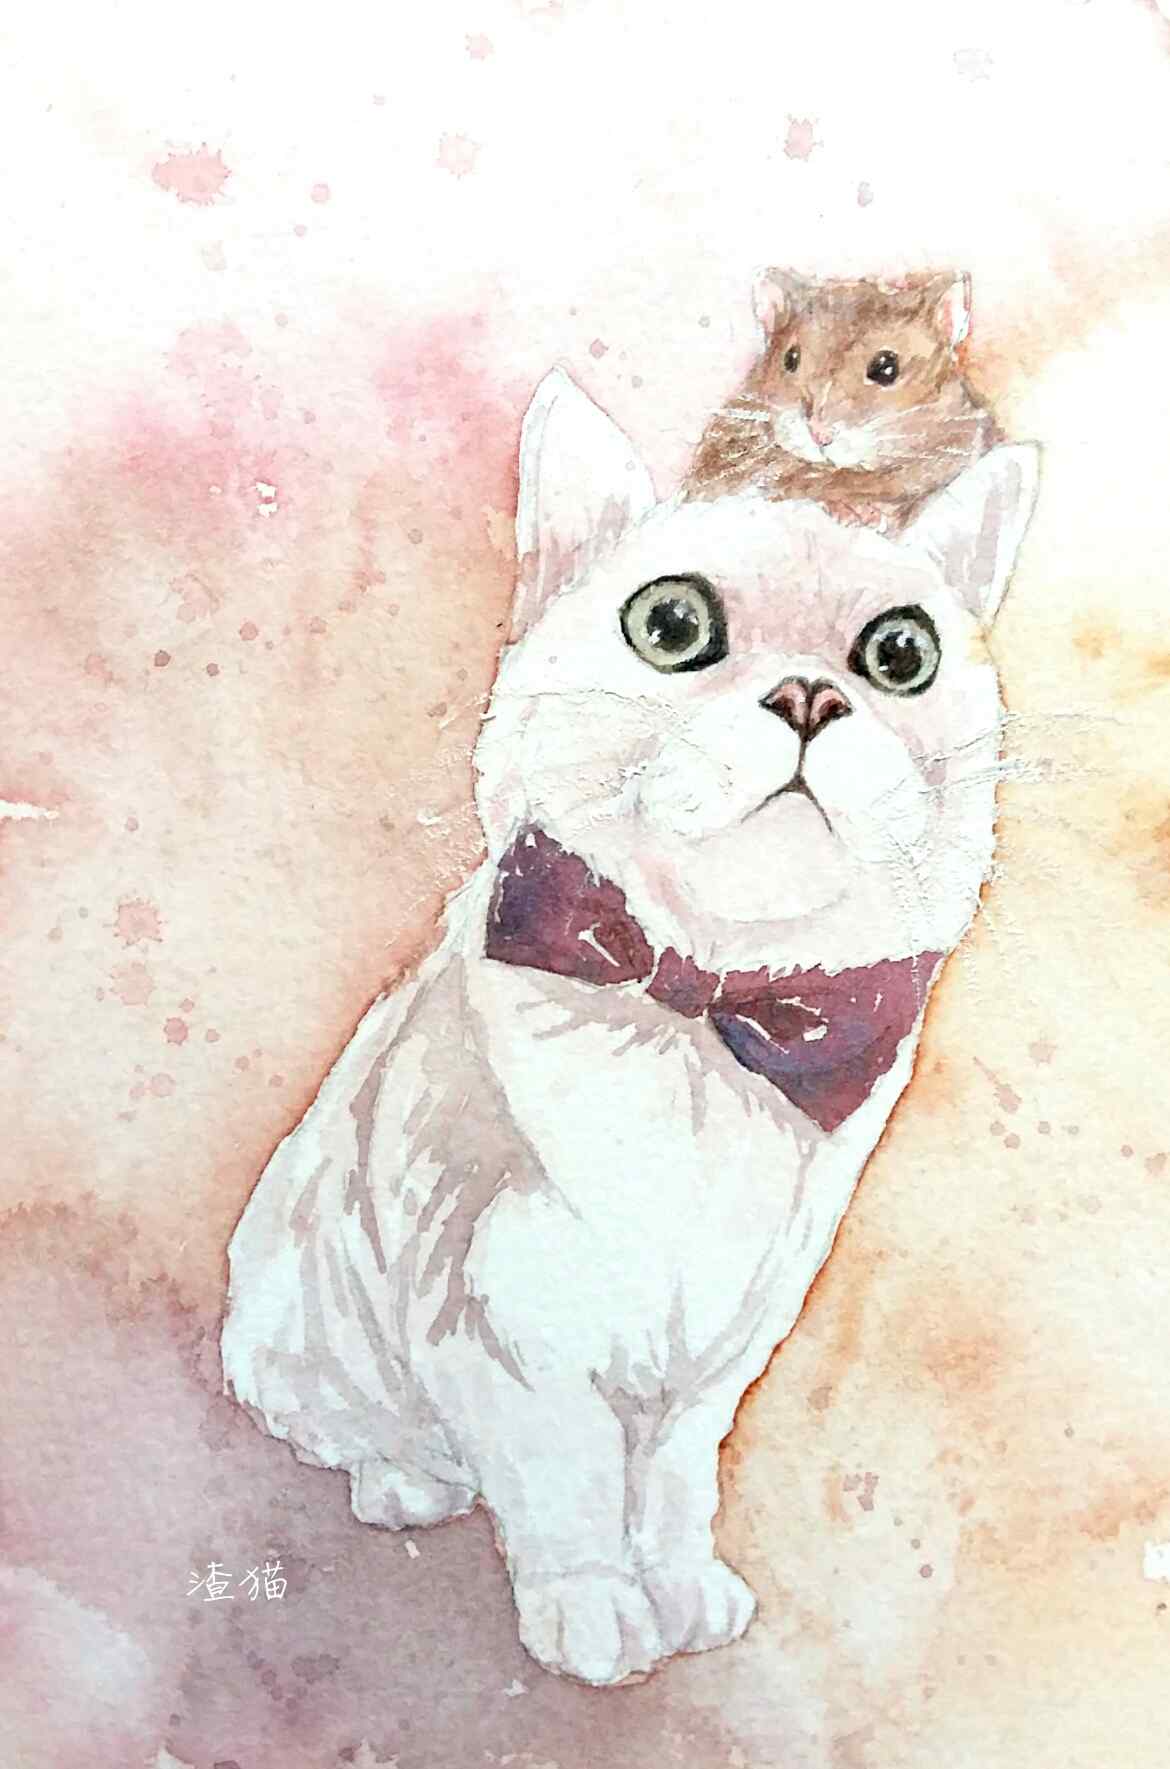 萌萌哒可爱小猫和仓鼠手绘手机壁纸